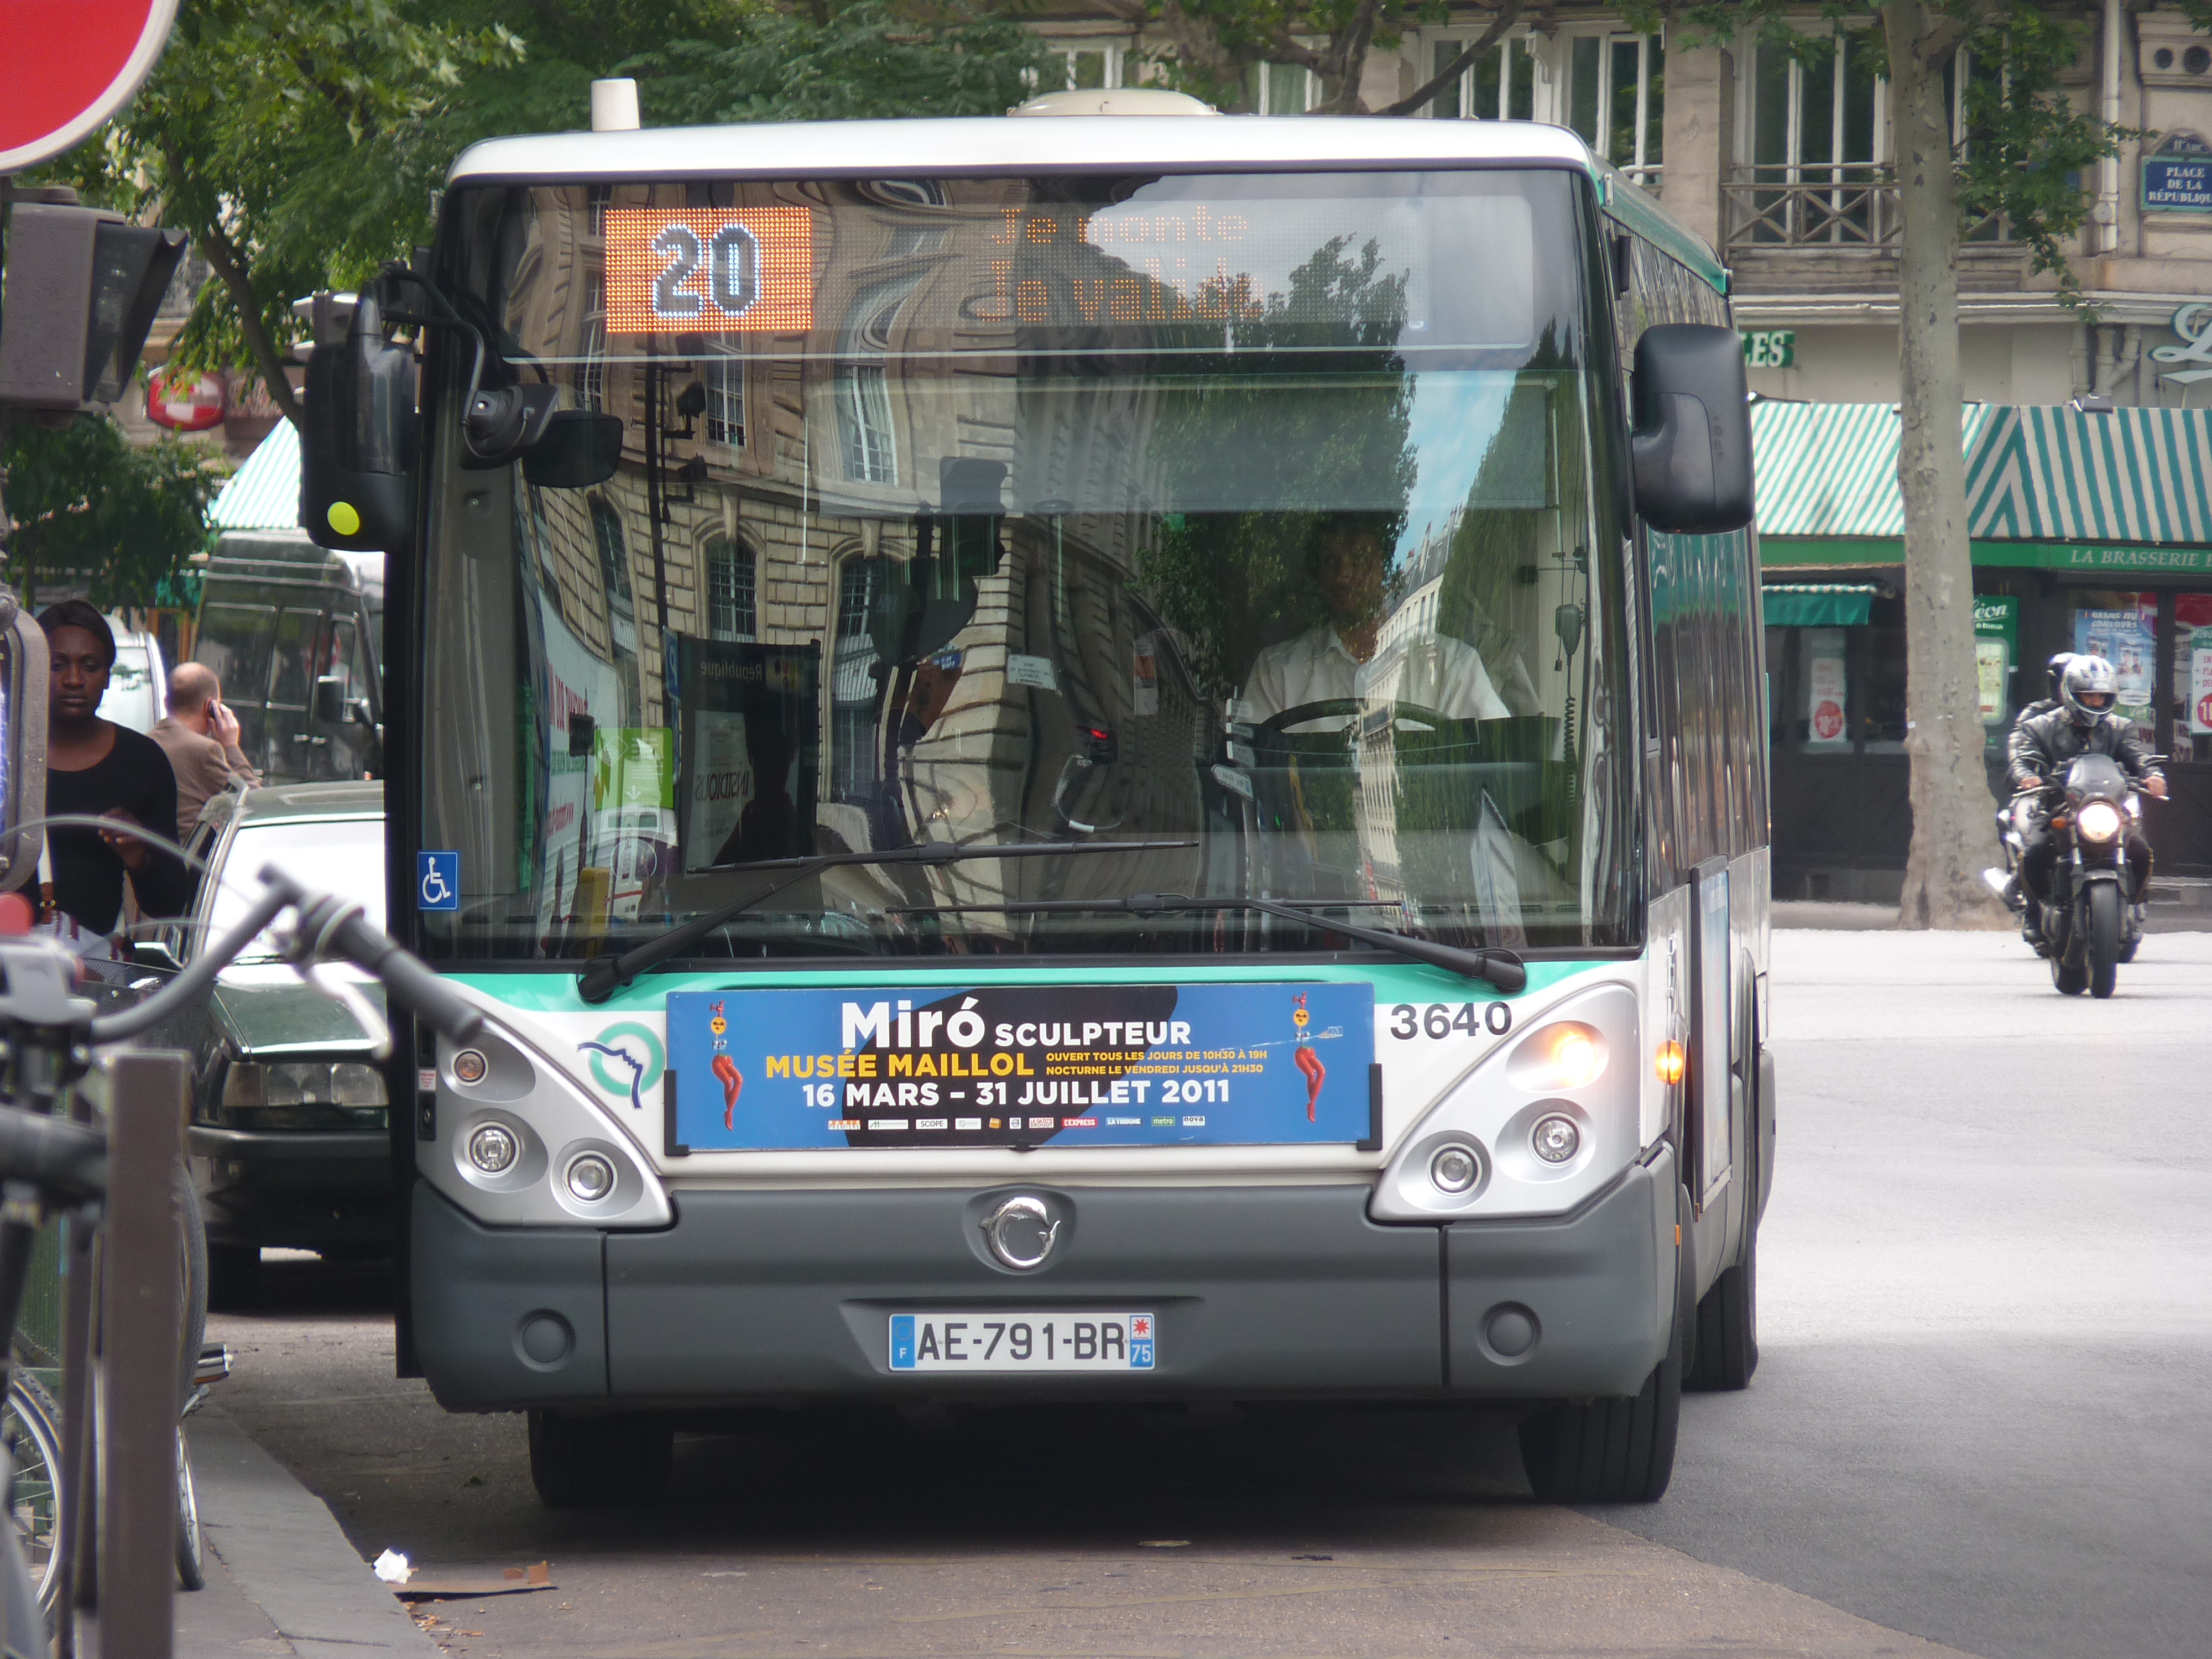 IvecoBus (anciennement Iris Bus), qui fournit déjà une partie des bus de la RATP, sera vraisemblablement associée de près à la transformation future du parc (licence Creative Commons)